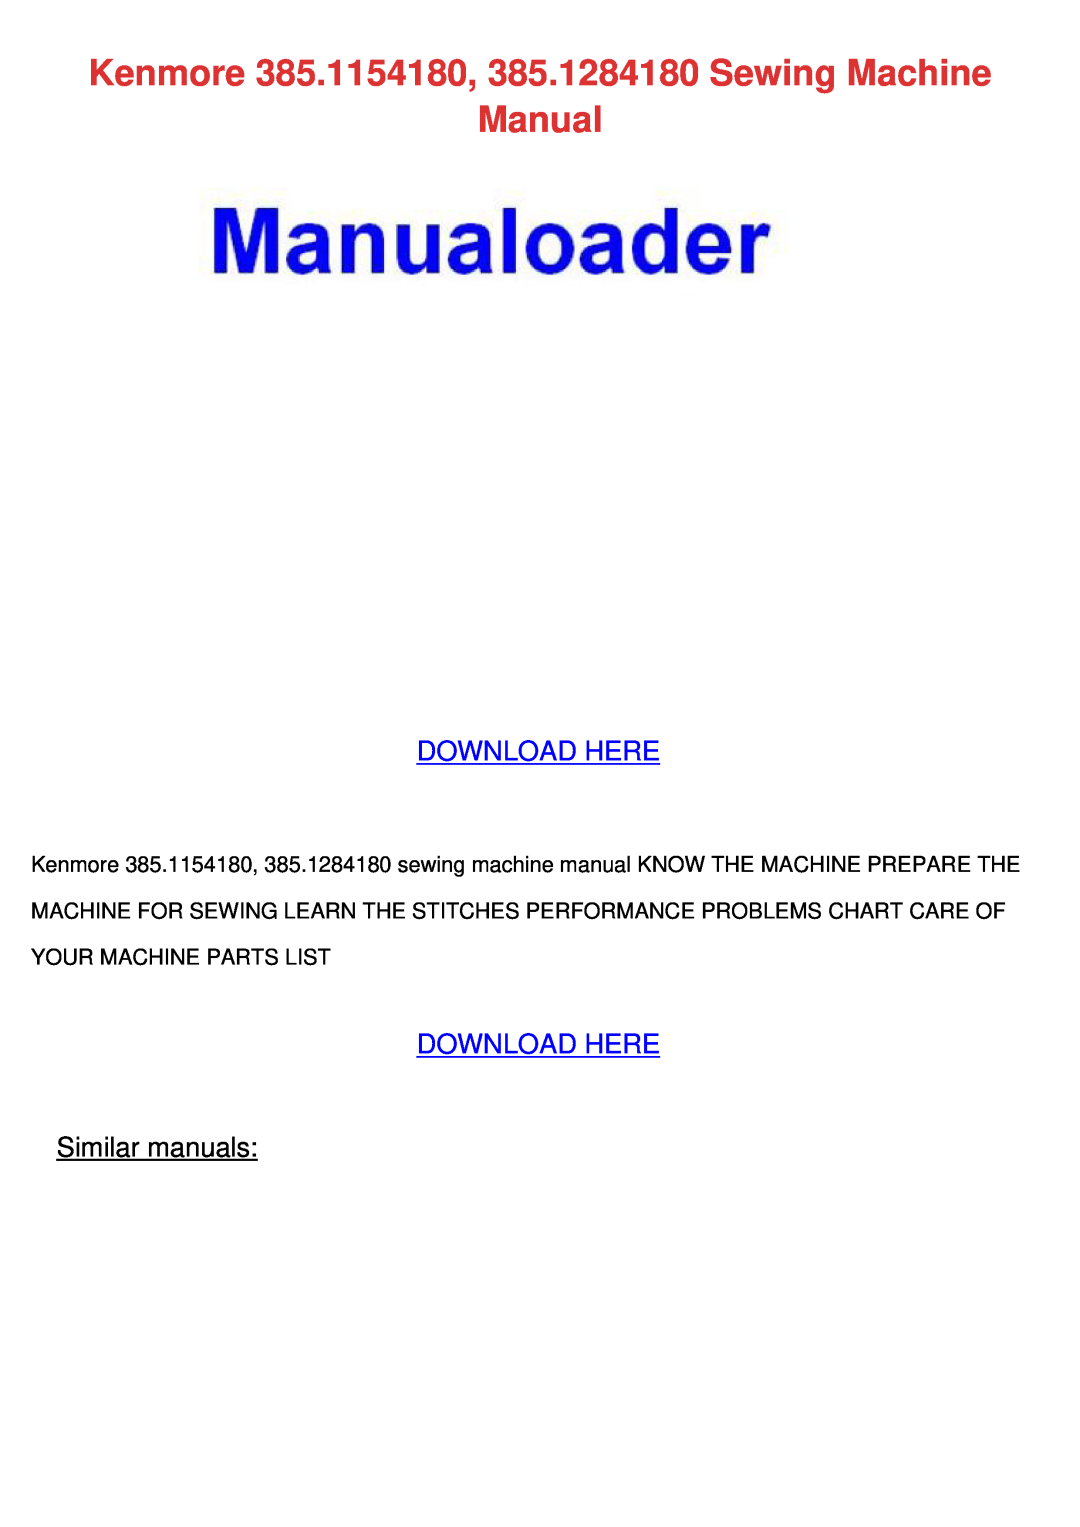 Kenmore manual Kenmore 385.1154180, 385.1284180 Sewing Machine Manual, Download Here, Similar manuals 